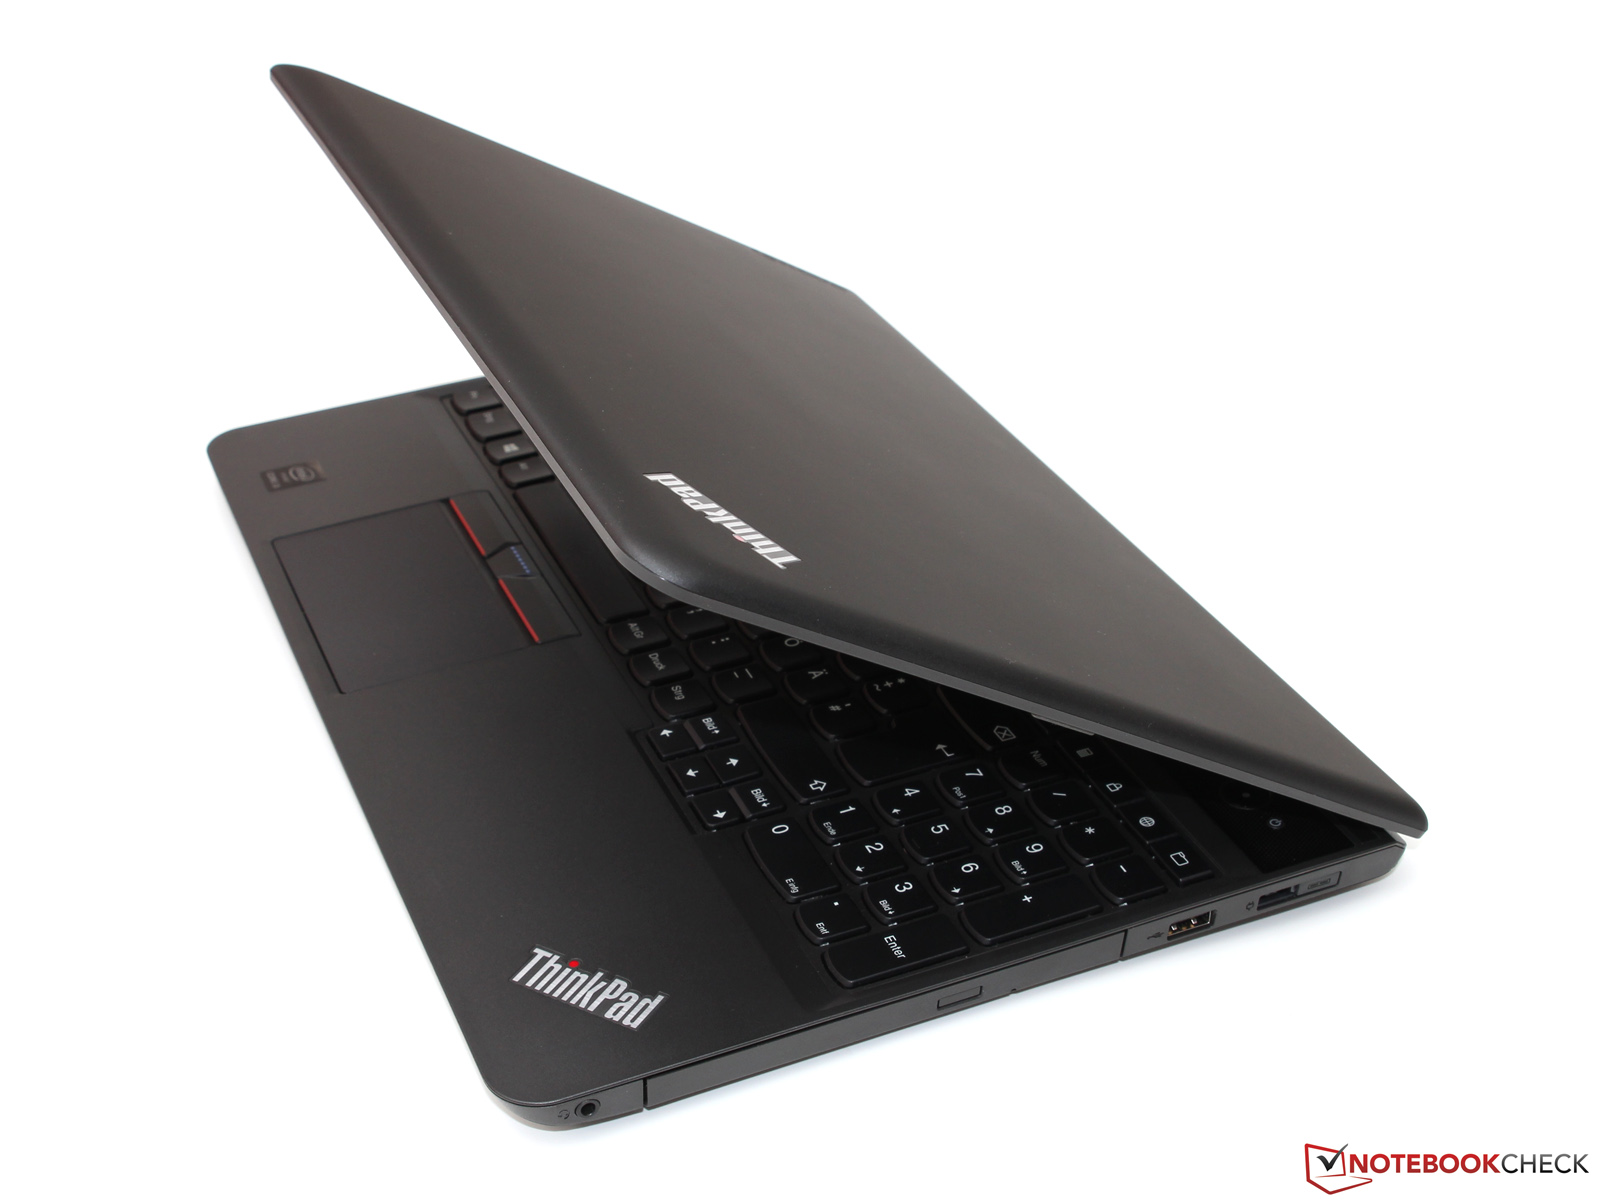 Lenovo ThinkPad E550 15.6" HD i3-5005U 4GB 500GB W10P 20DF00EDUS Laptop SD